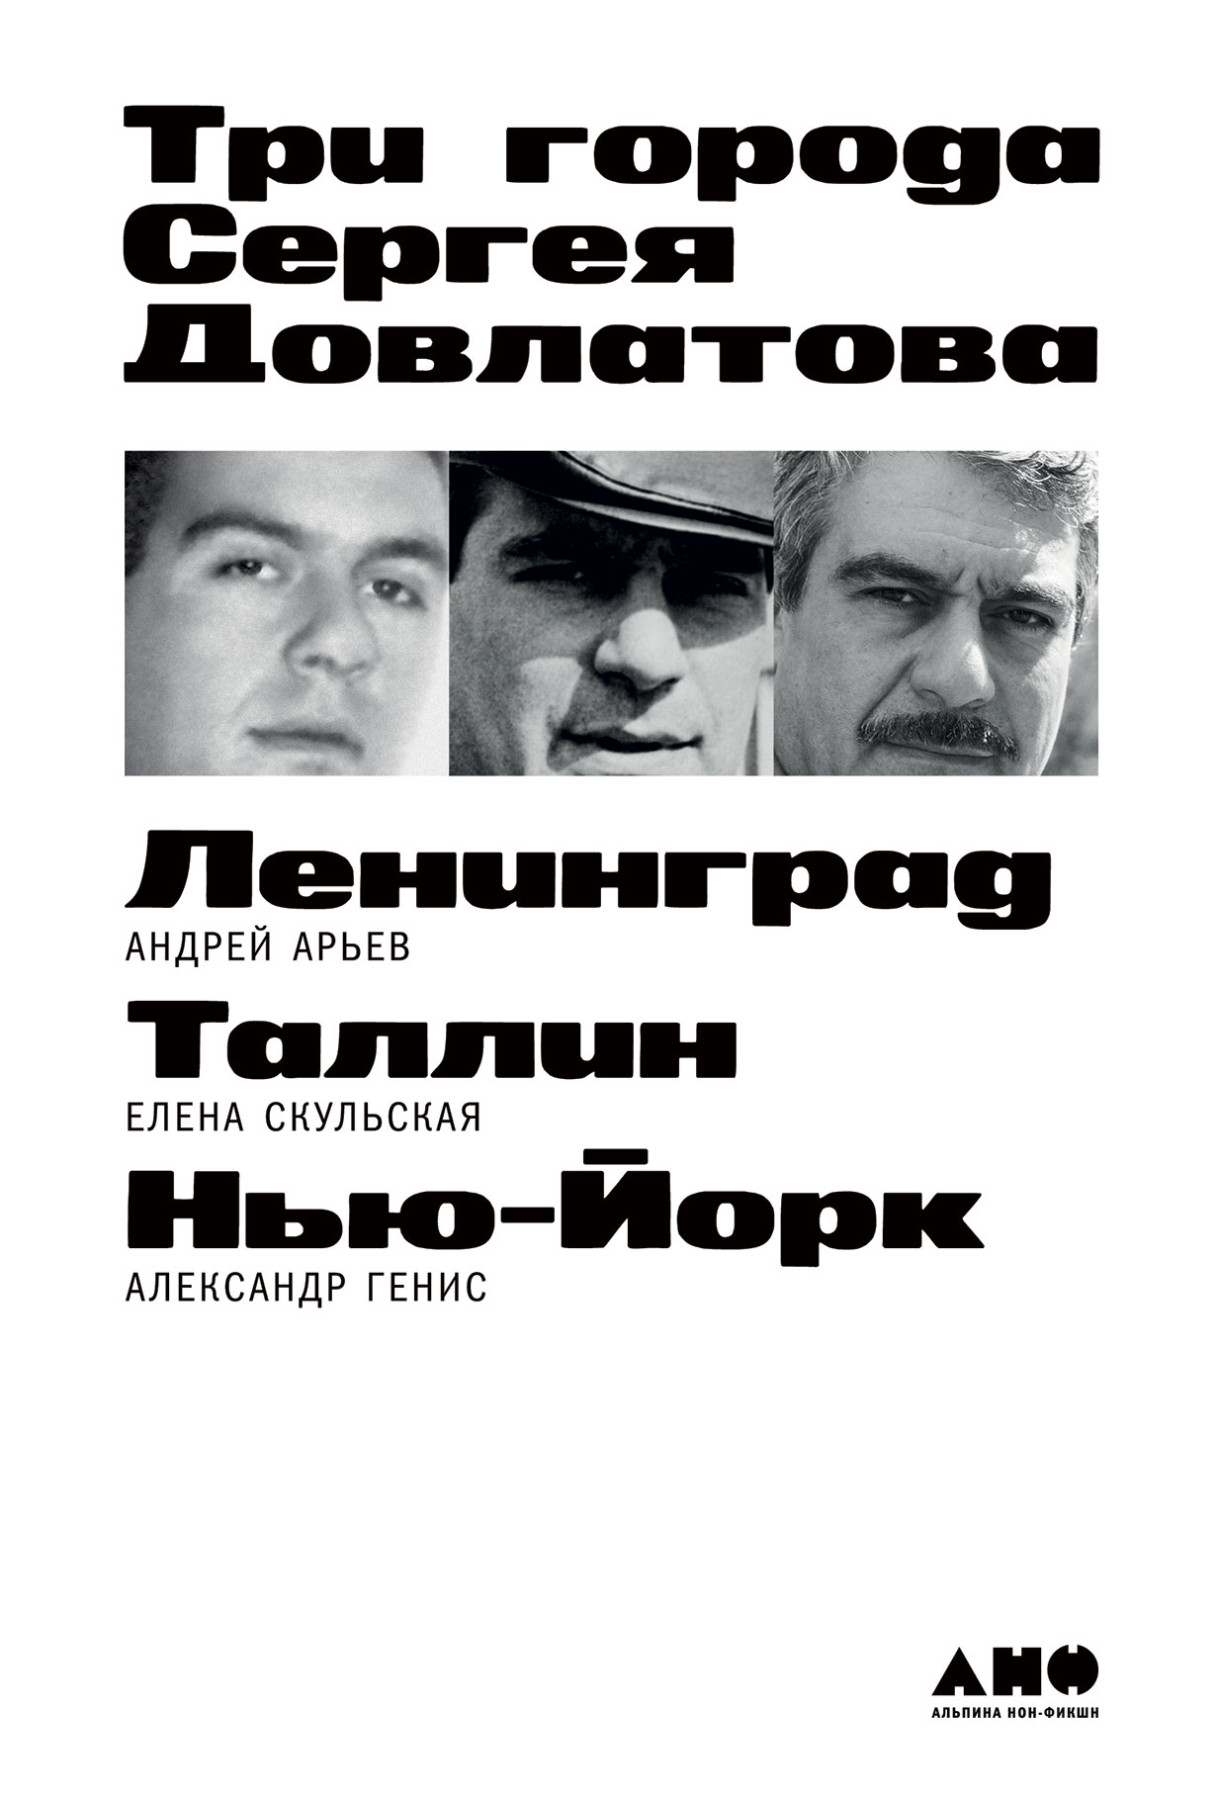 Три города Сергея Довлатова обложка.